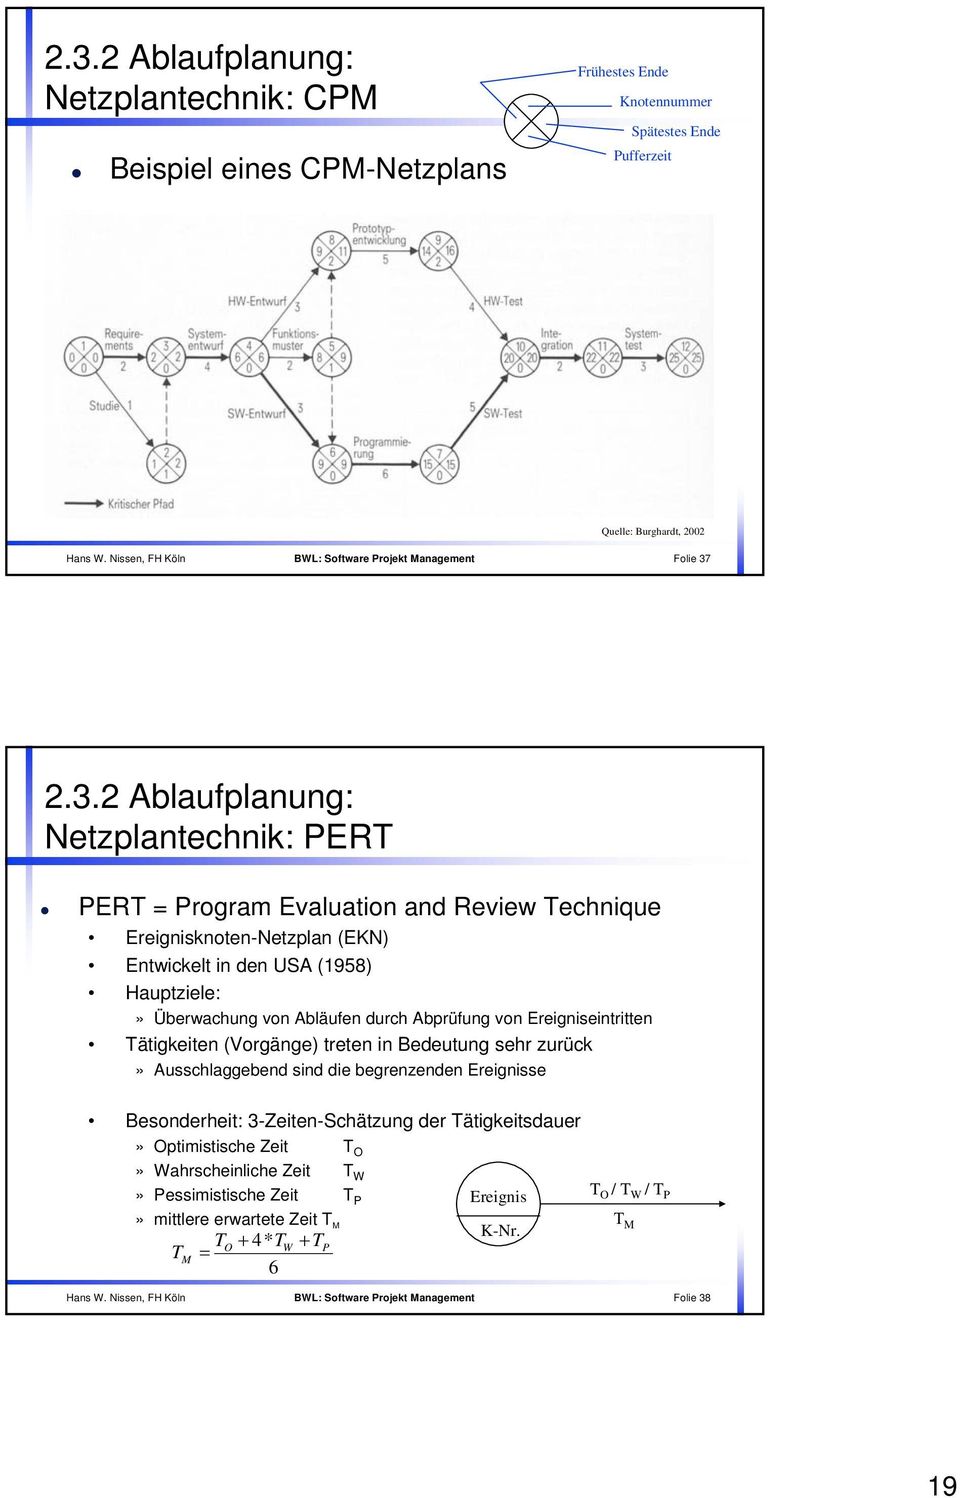 2.3.2 Ablaufplanung: Netzplantechnik: PERT PERT Program Evaluation and Review Technique Ereignisknoten-Netzplan (EKN) Entwickelt in den USA (1958) Hauptziele:» Überwachung von Abläufen durch